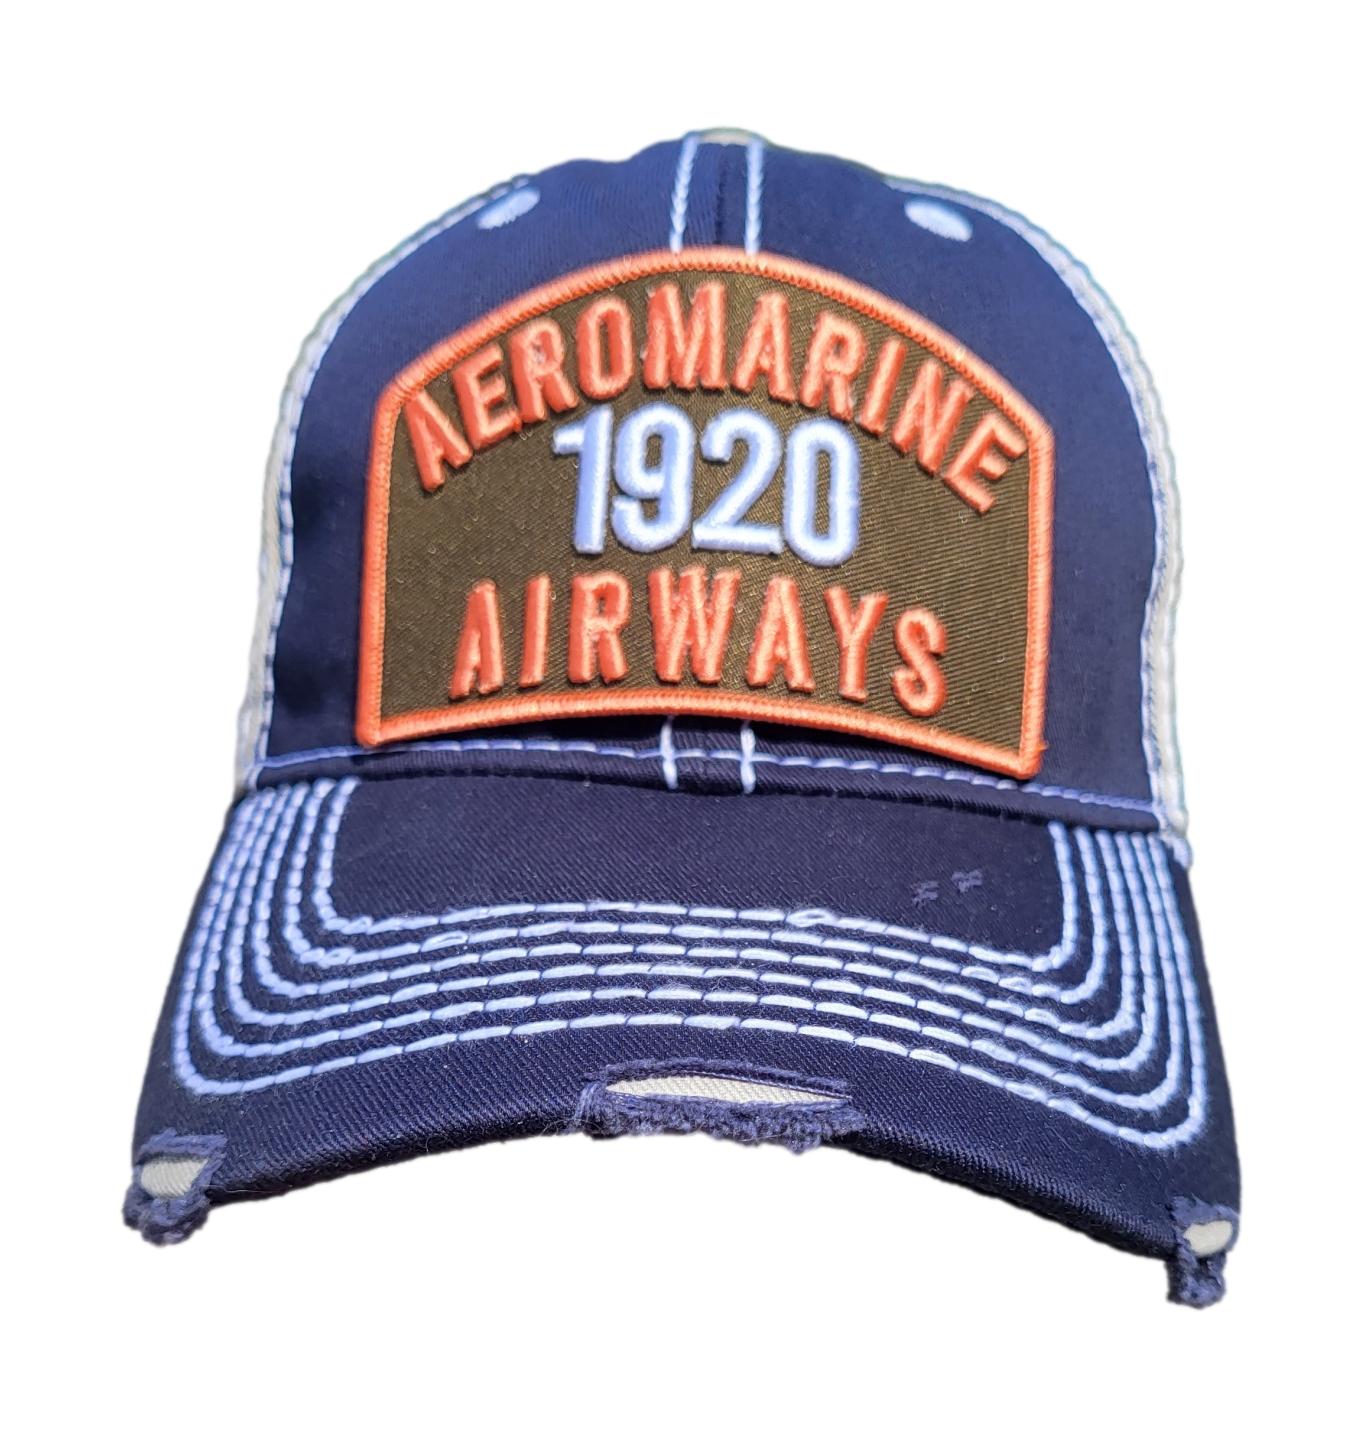 Aeromarine distressed hat